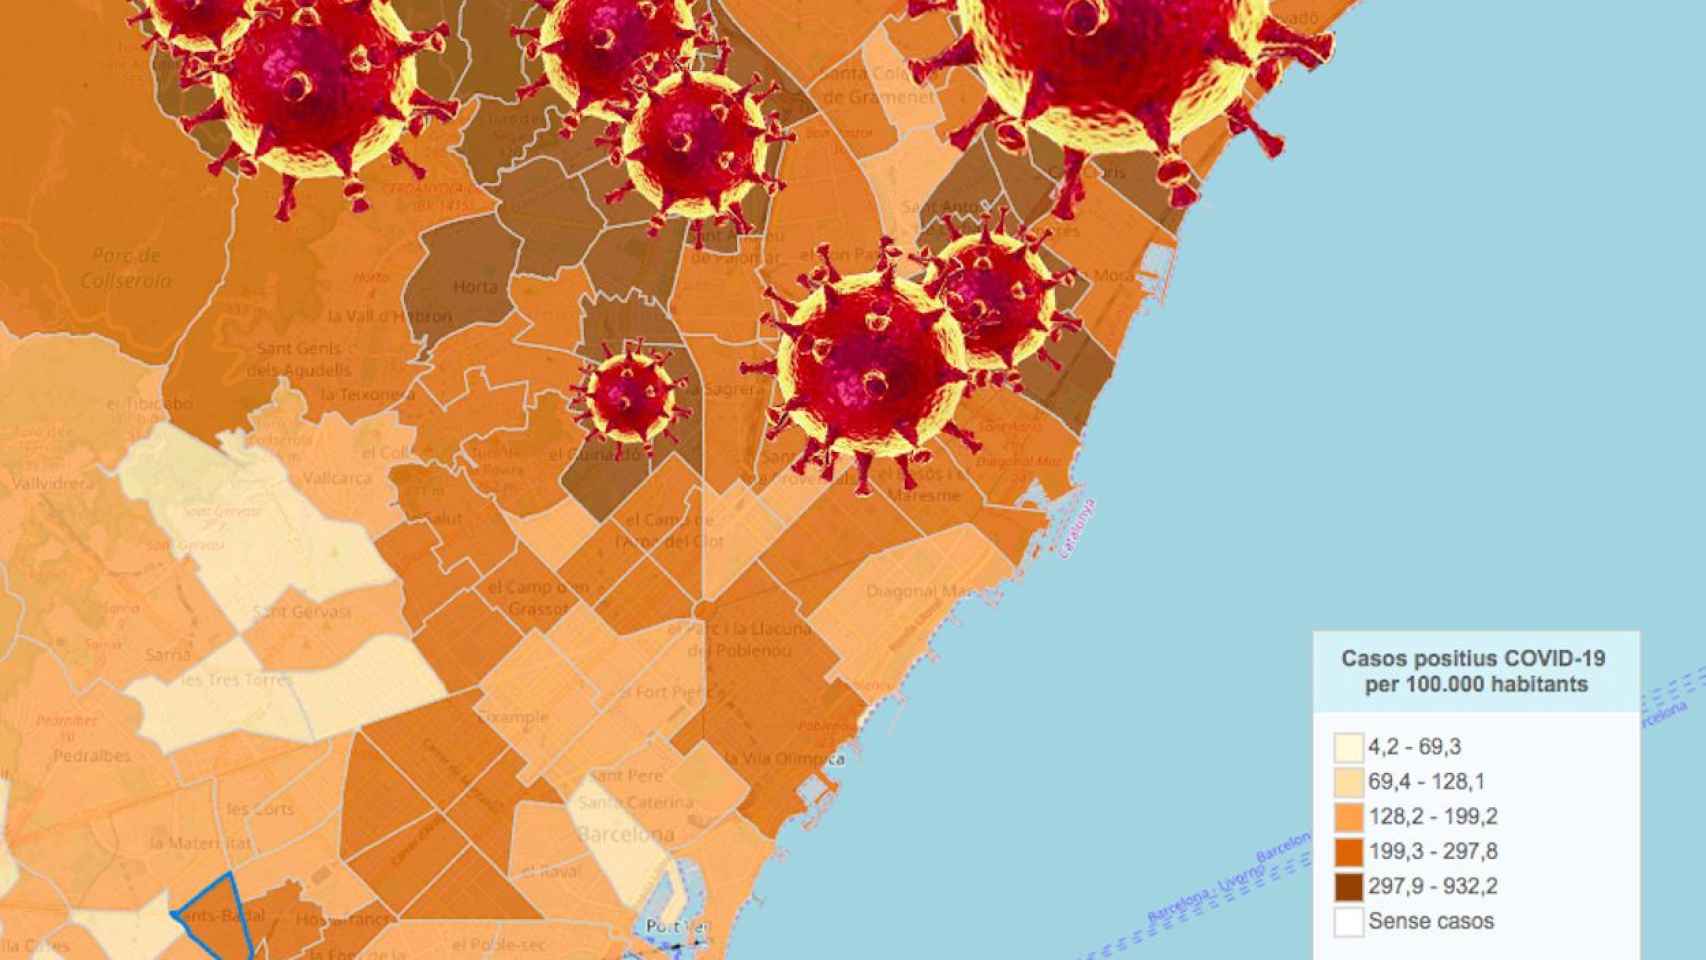 Fotomontaje del mapa de algunos de los barrios con más contagios por coronavirus de Barcelona / METRÓPOLI ABIERTA